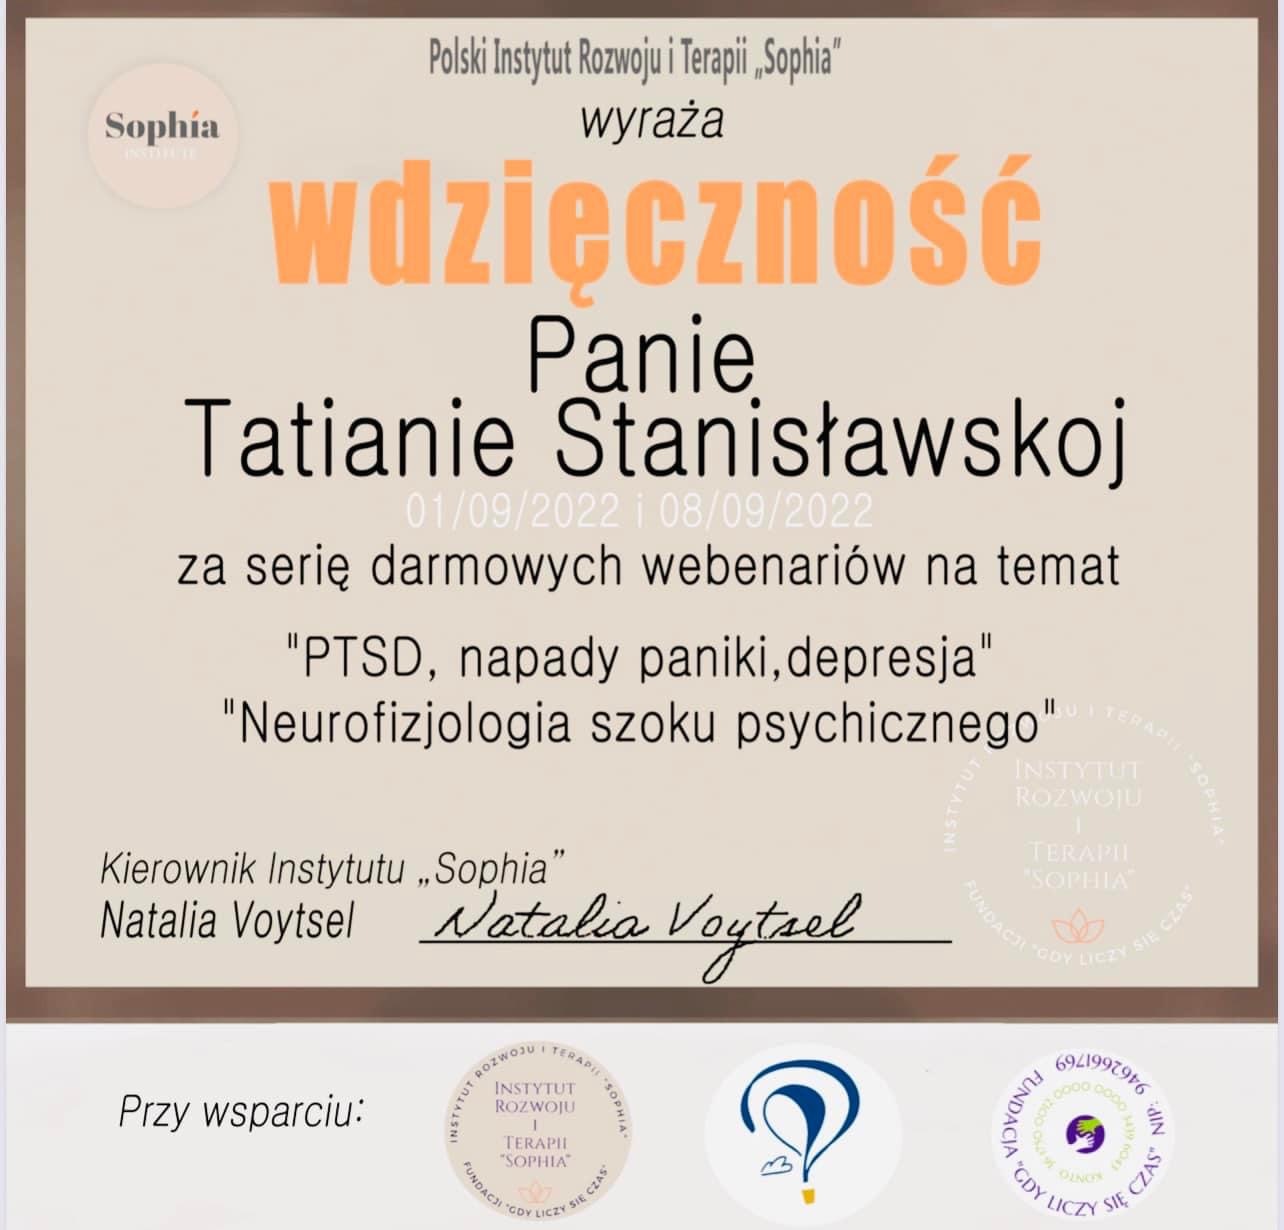 Подяка від польського Інституту Розвитку і Терапії Sophia